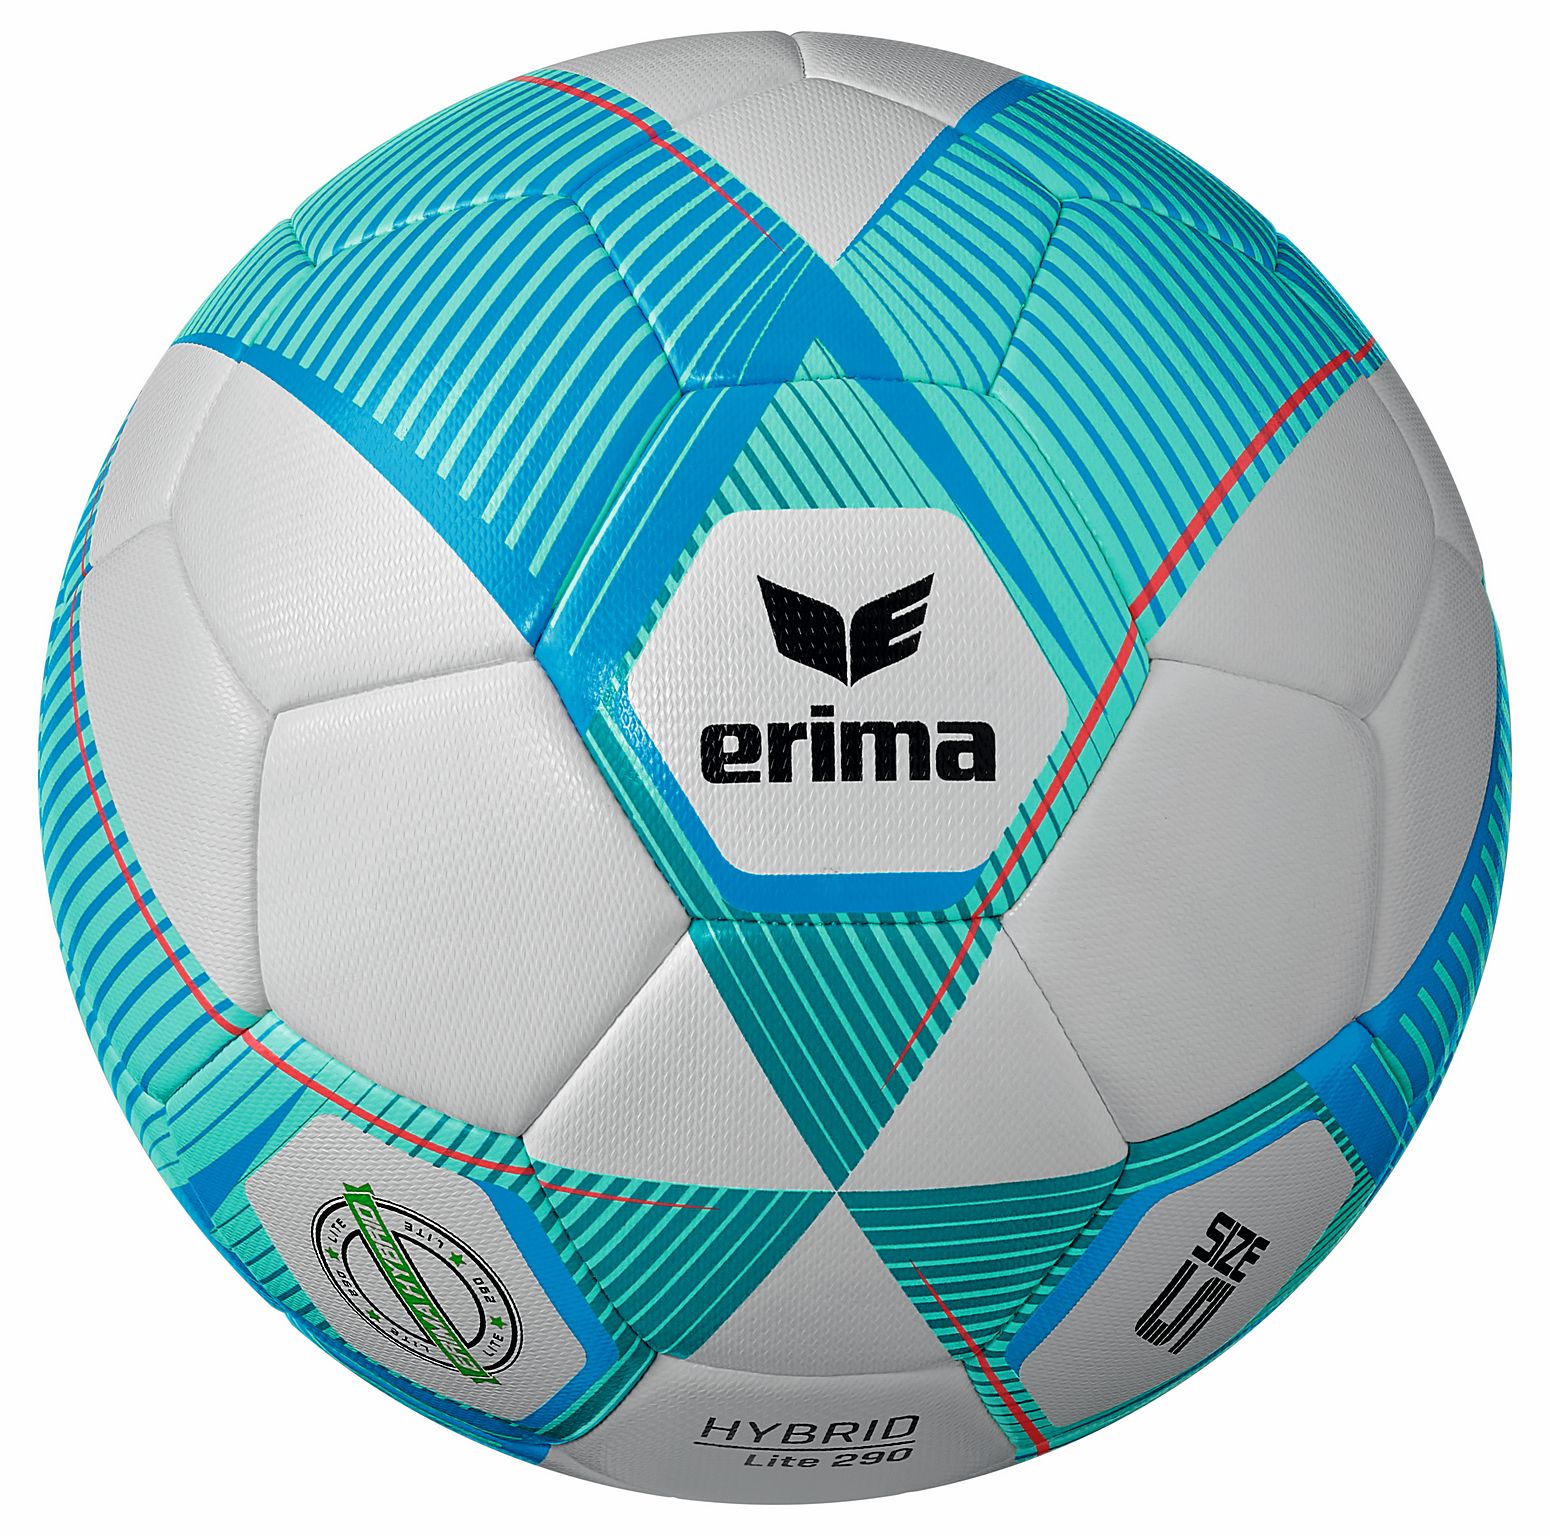 Erima Hybrid Lite 290 gr. Jugendfußball, Größe 5